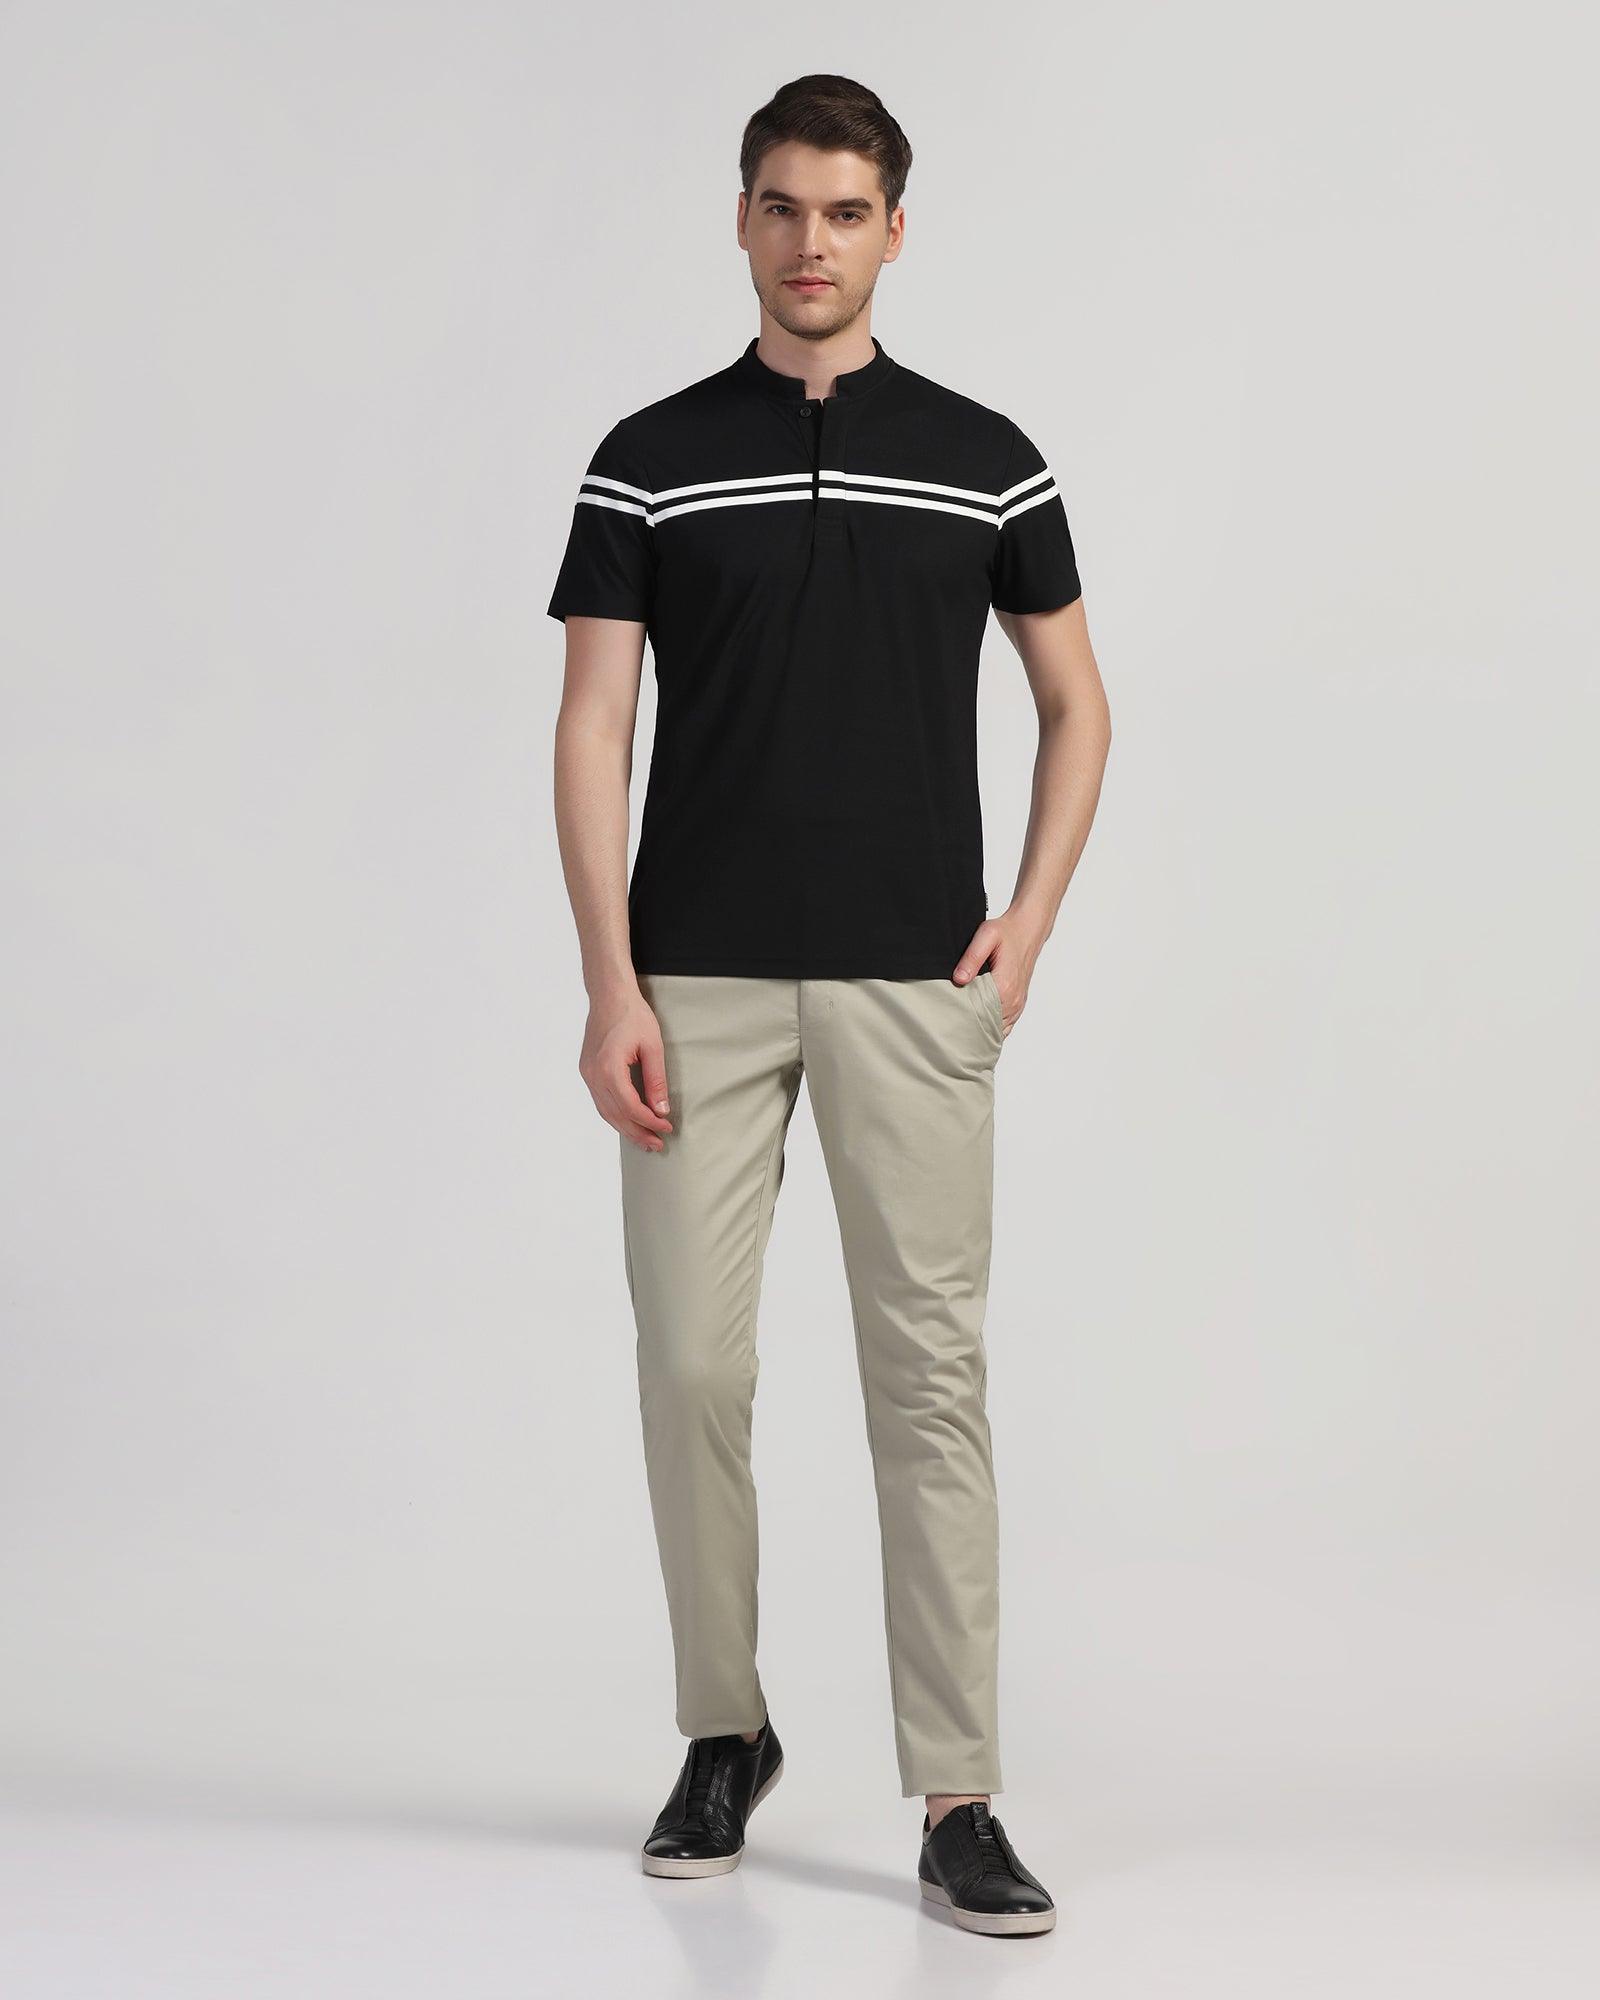 TechPro Polo Black Stripe T-Shirt - Saylor